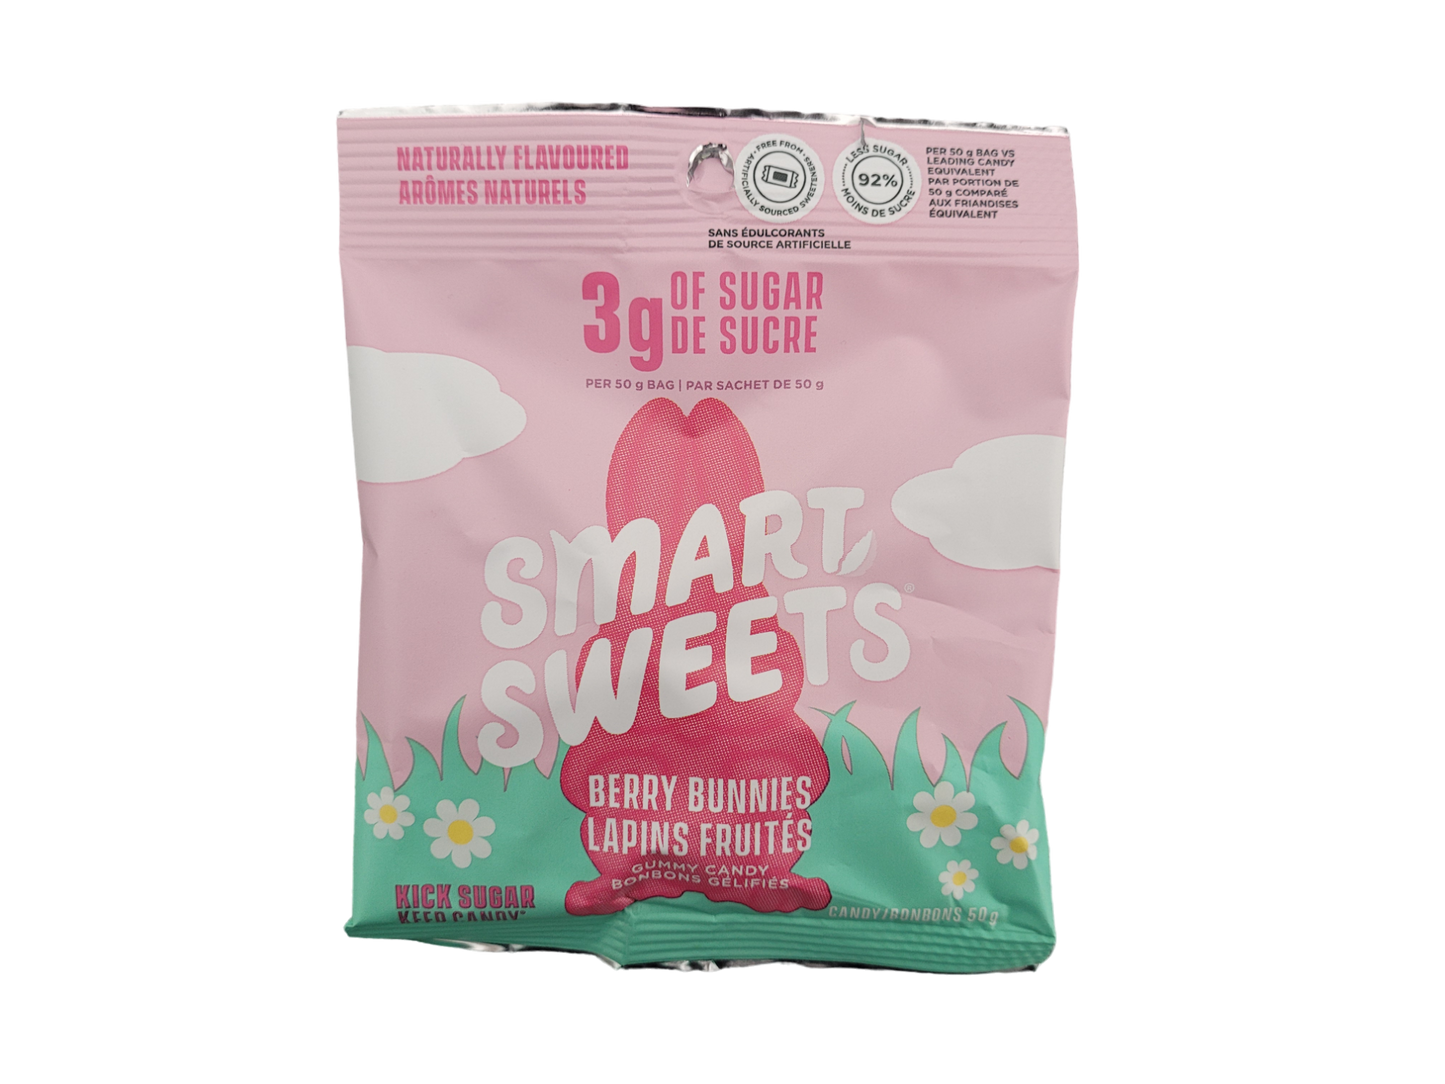 Smart Sweets - berry bunnies